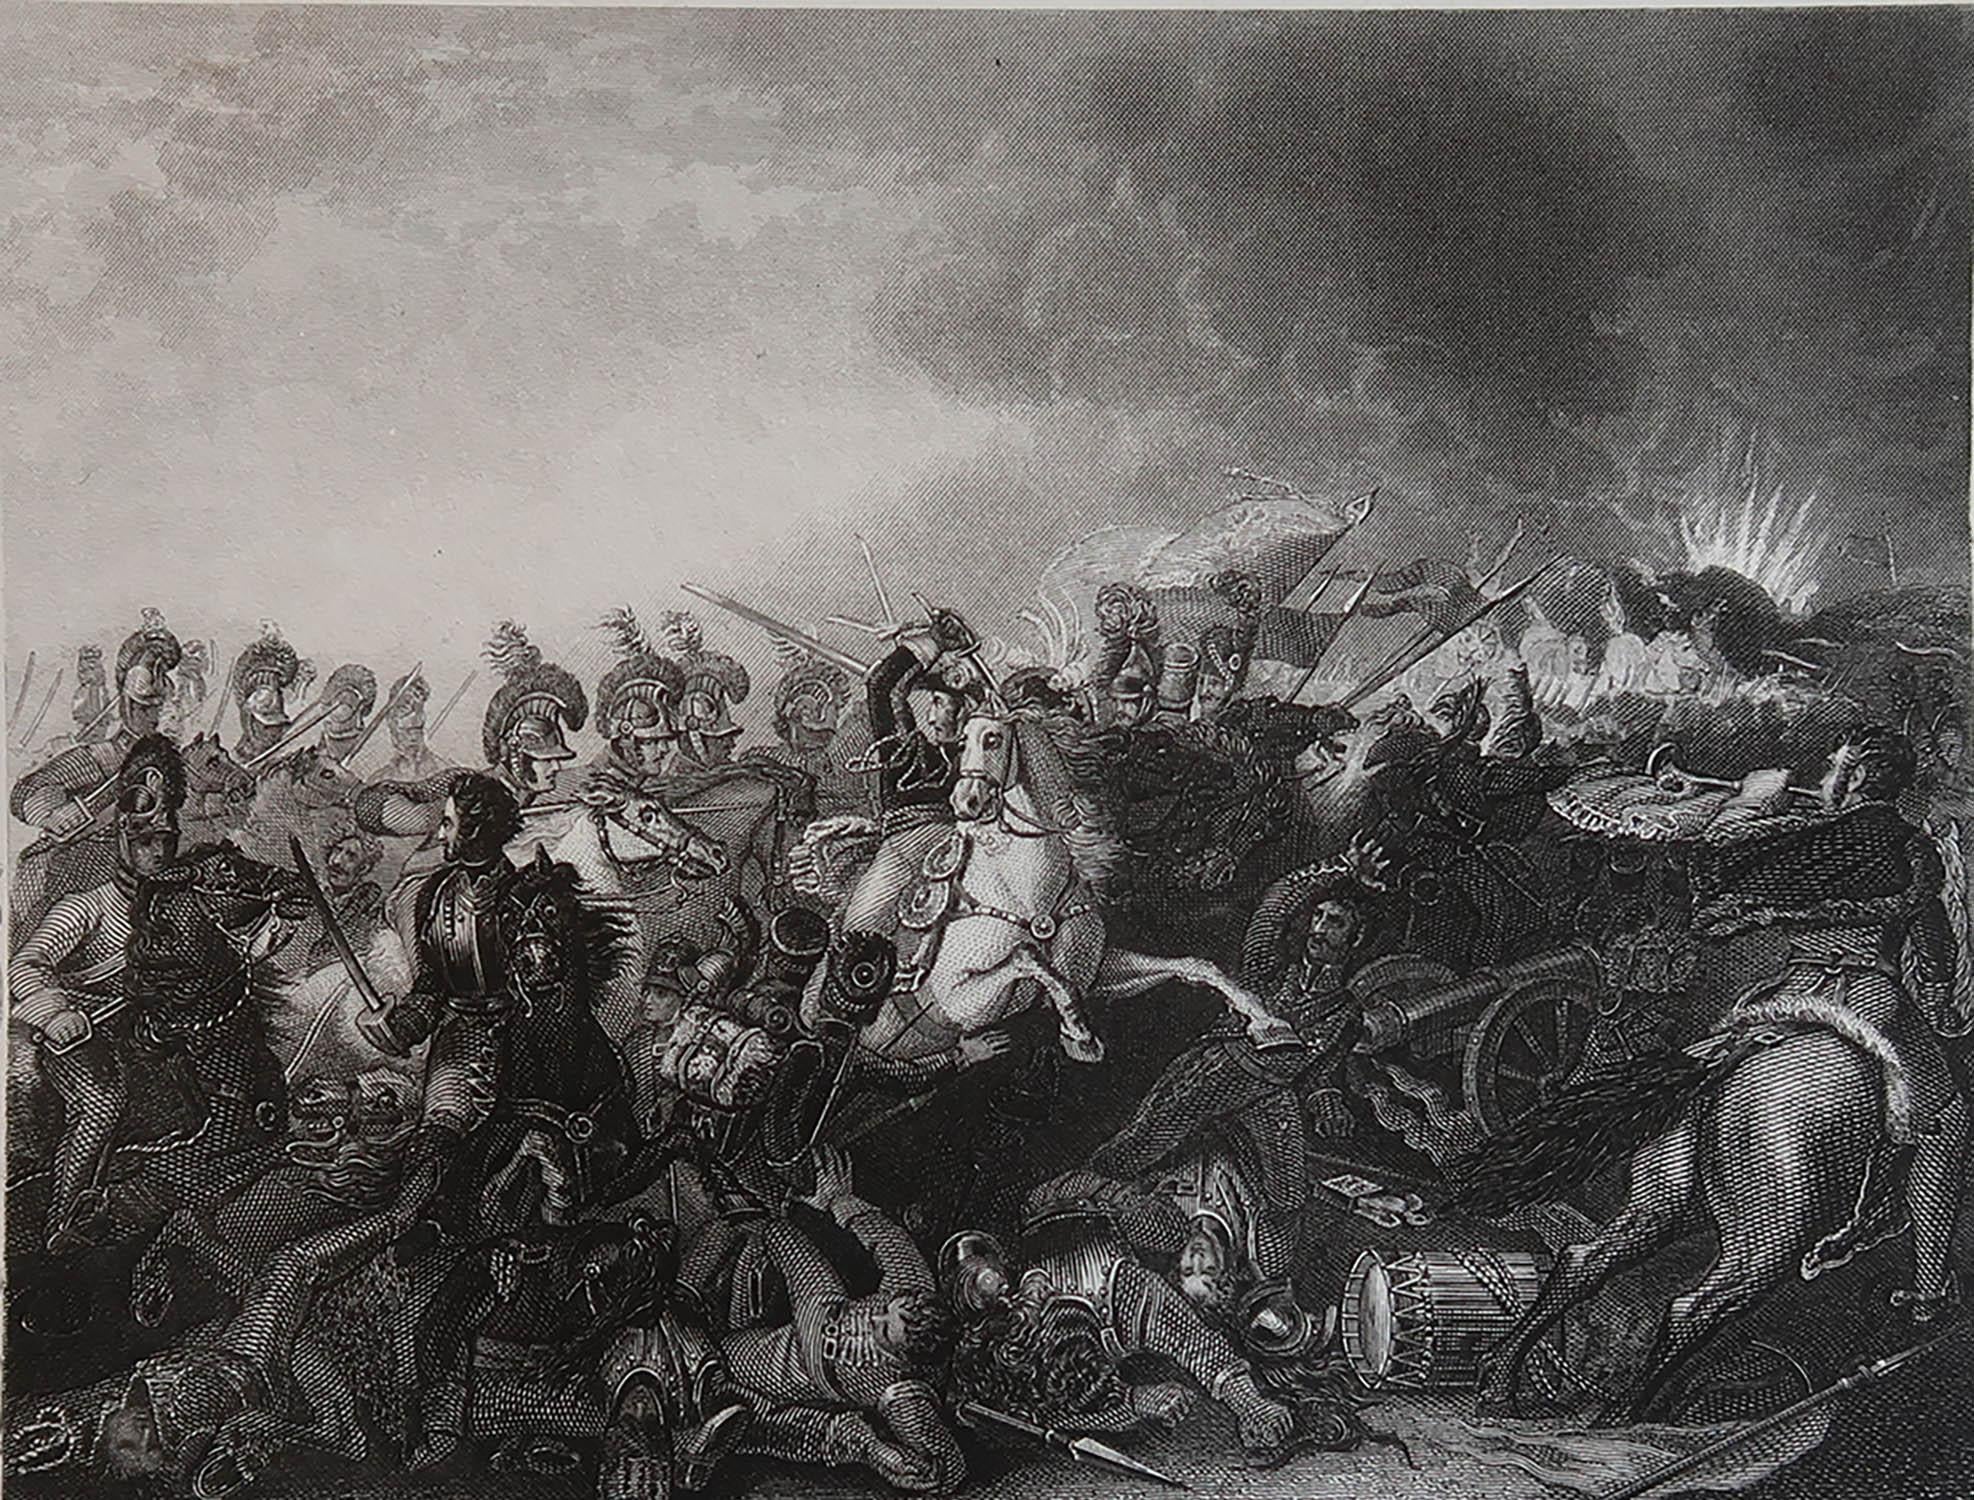 Gran imagen de La Batalla de Waterloo

Fino grabado en acero con un borde muy decorativo.

Publicado por Tallis C.1850

Sin enmarcar.

El tamaño indicado es el tamaño del papel